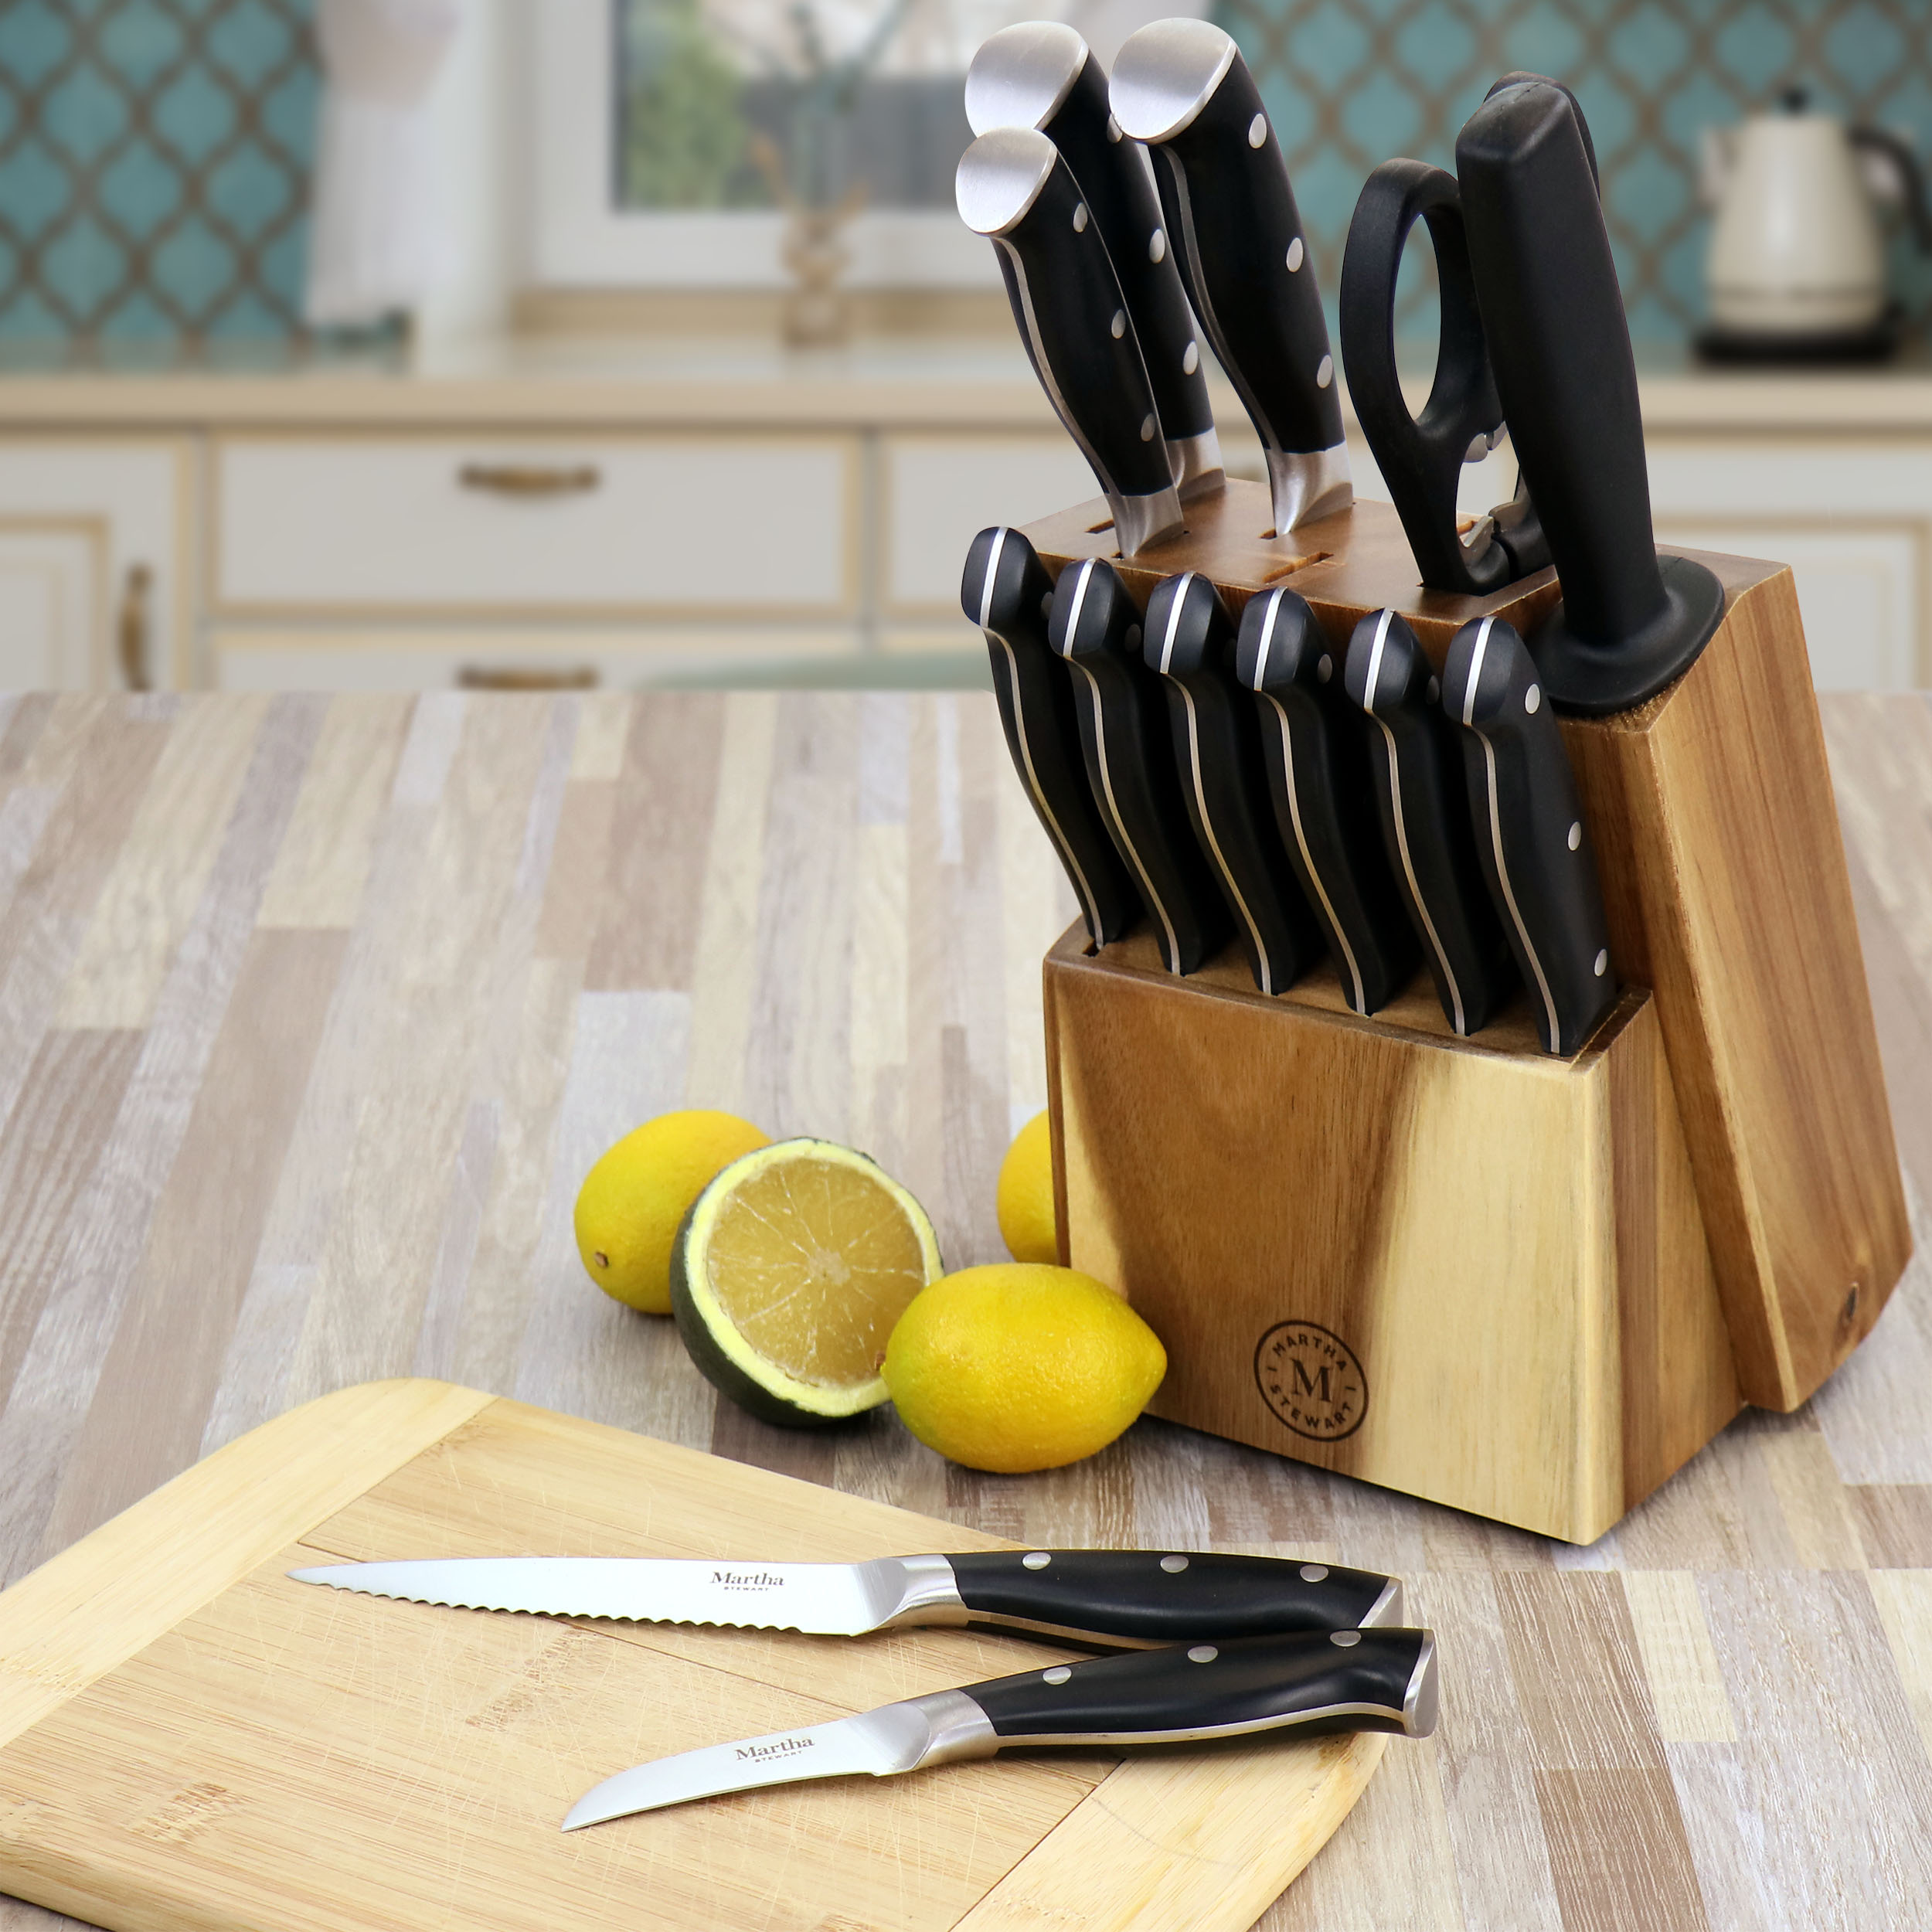 Martha Stewart Collection Stainless Steel Black Cutlery Set Wood Block 19  piece